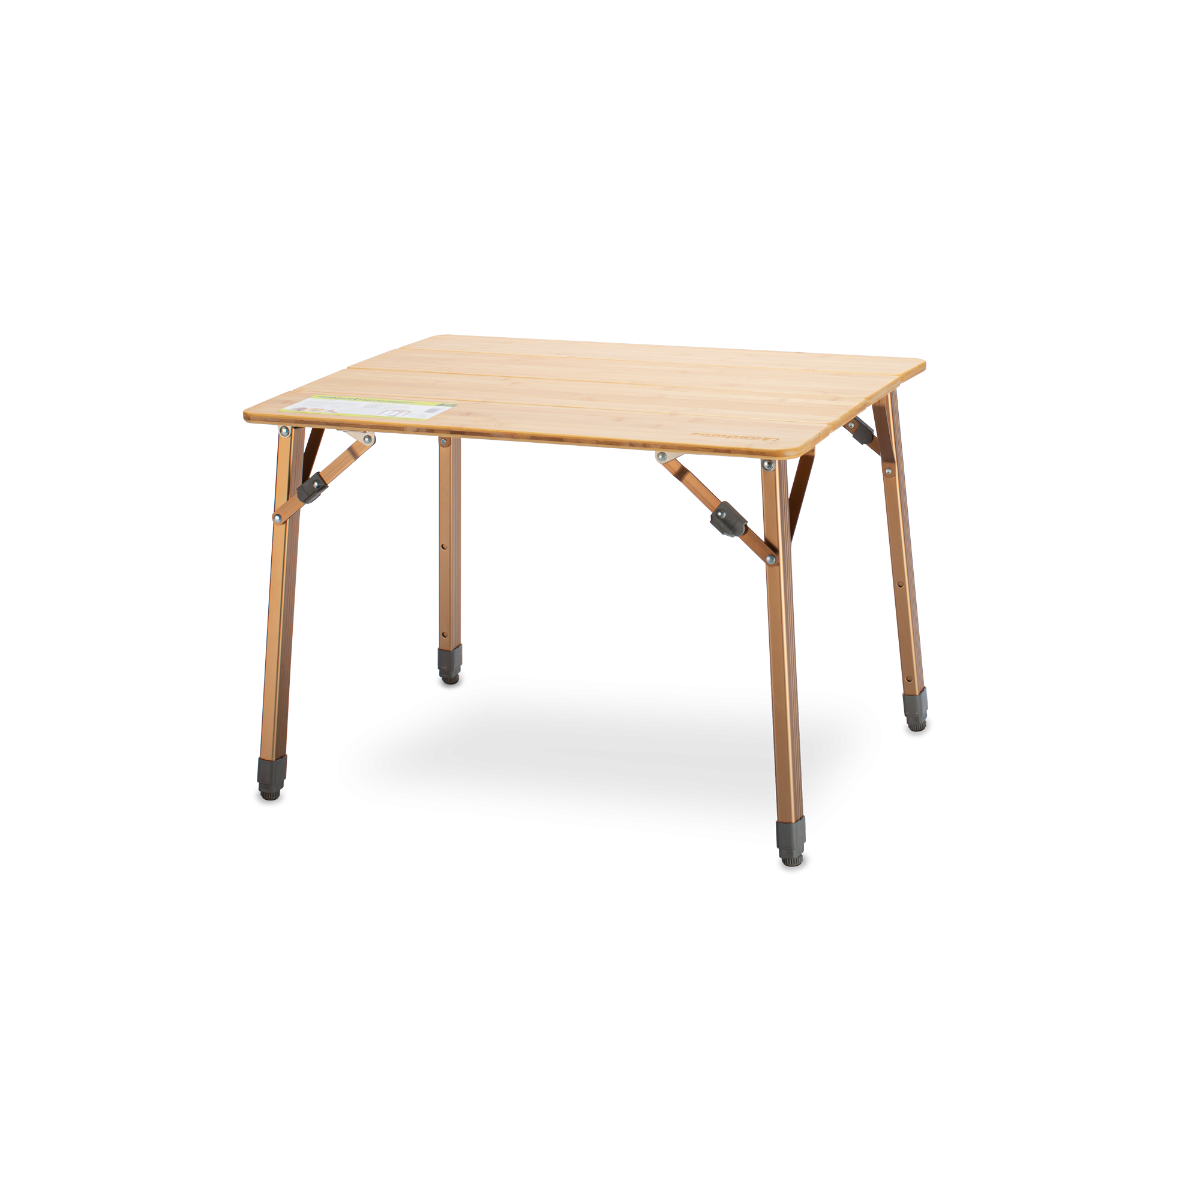 Zempire Kitpac Standard Table V2